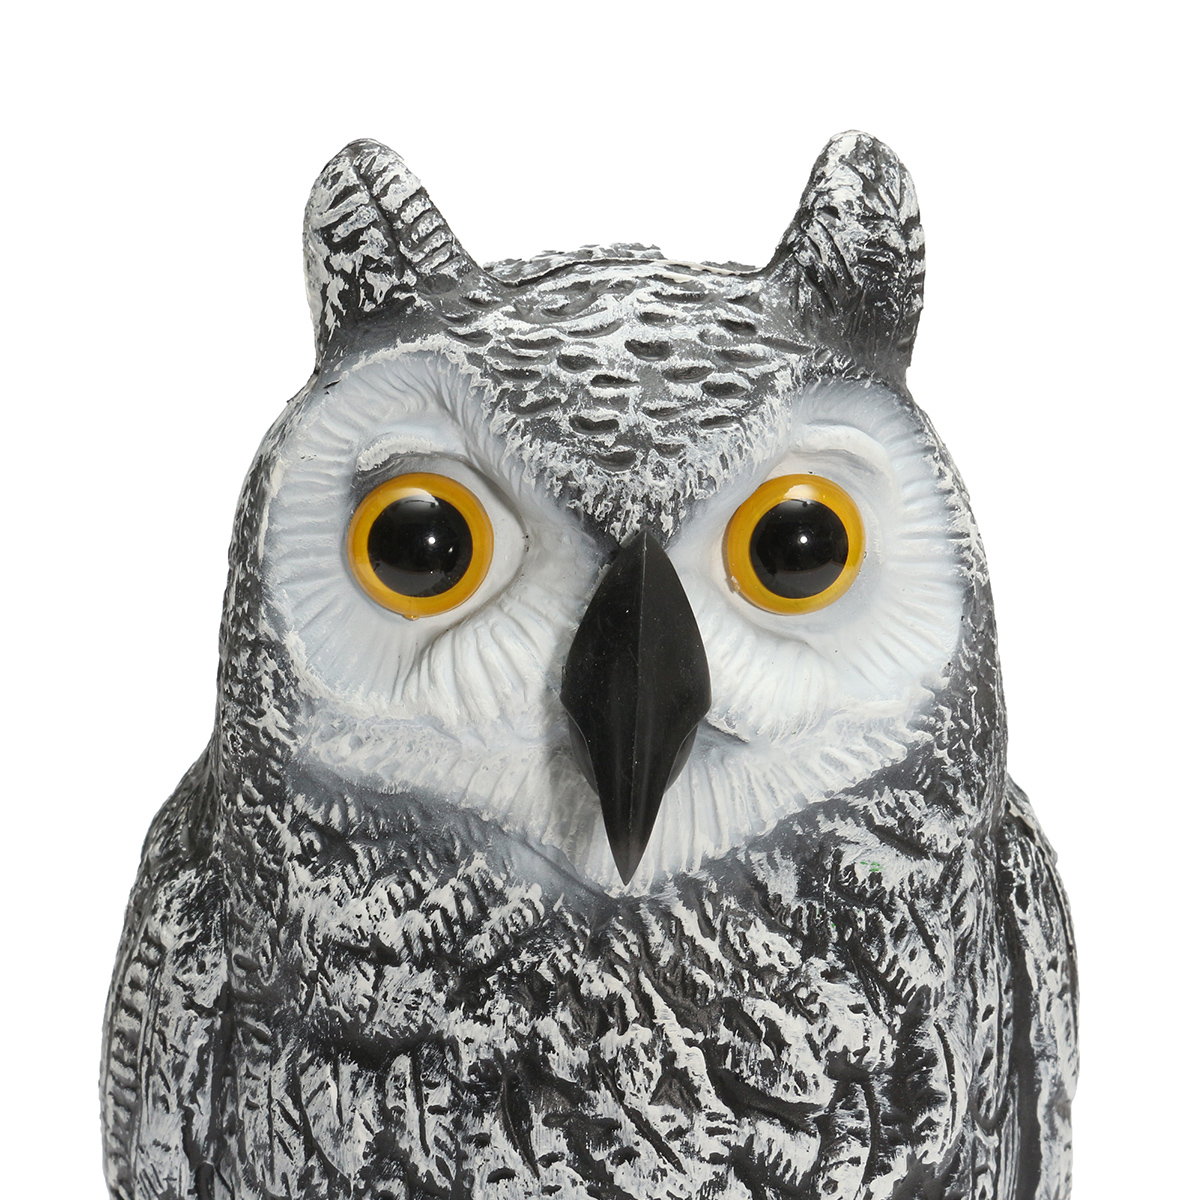 Plastic-Standing-Fake-Owl-Hunting-Decoy-Deterrent-Scarer-Repeller-Garden-Decor-1243366-2